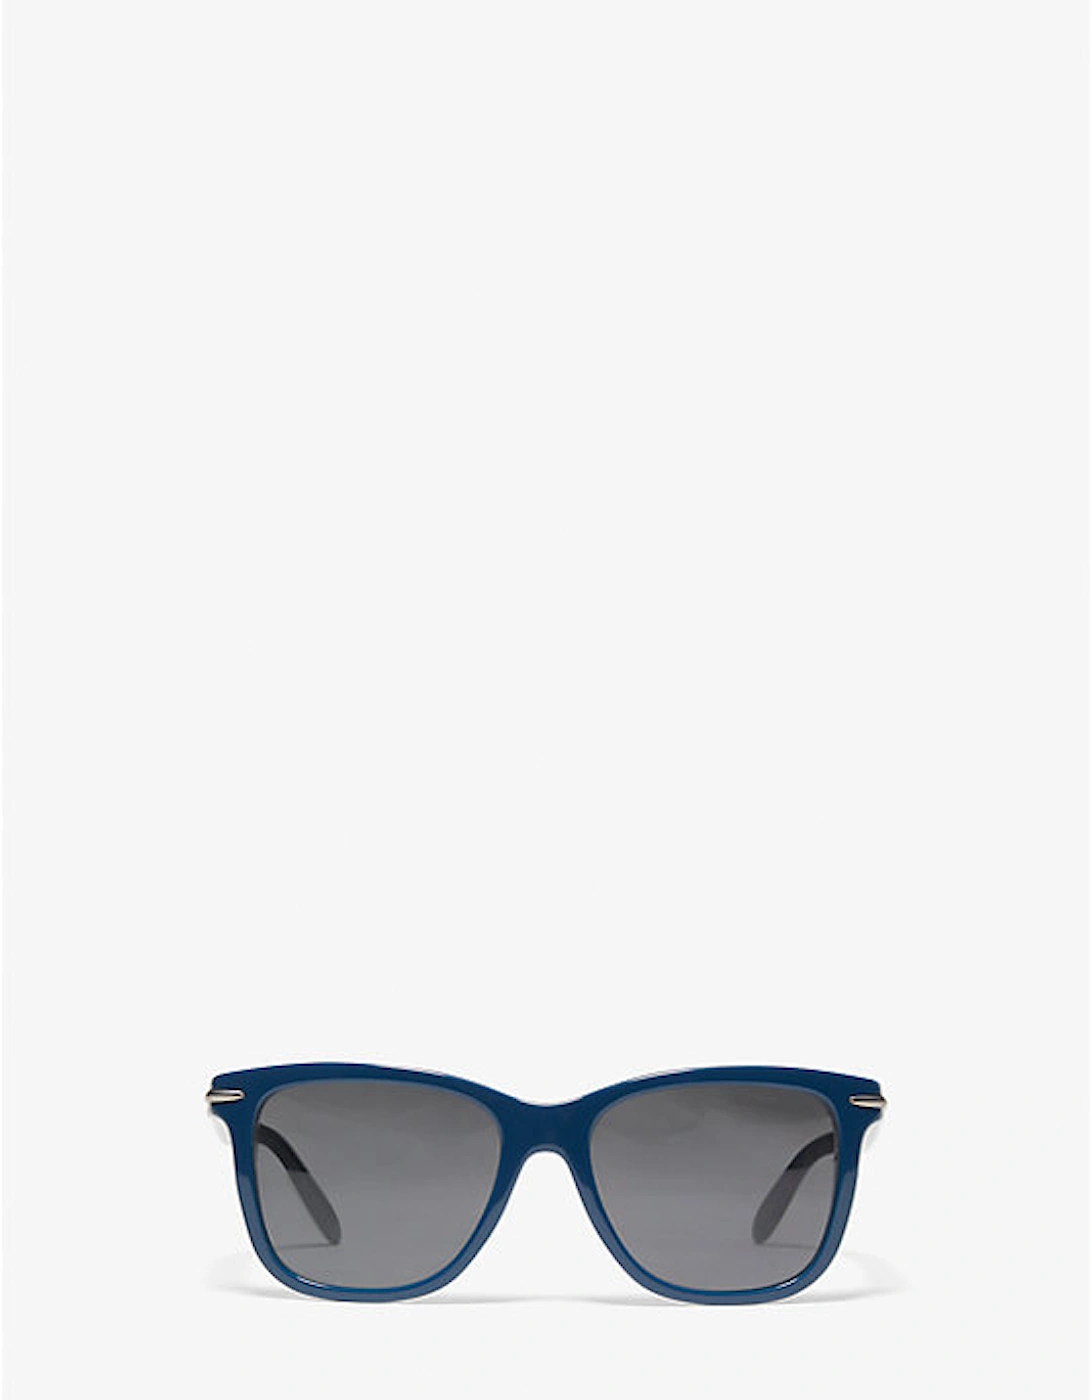 Telluride Sunglasses, 2 of 1